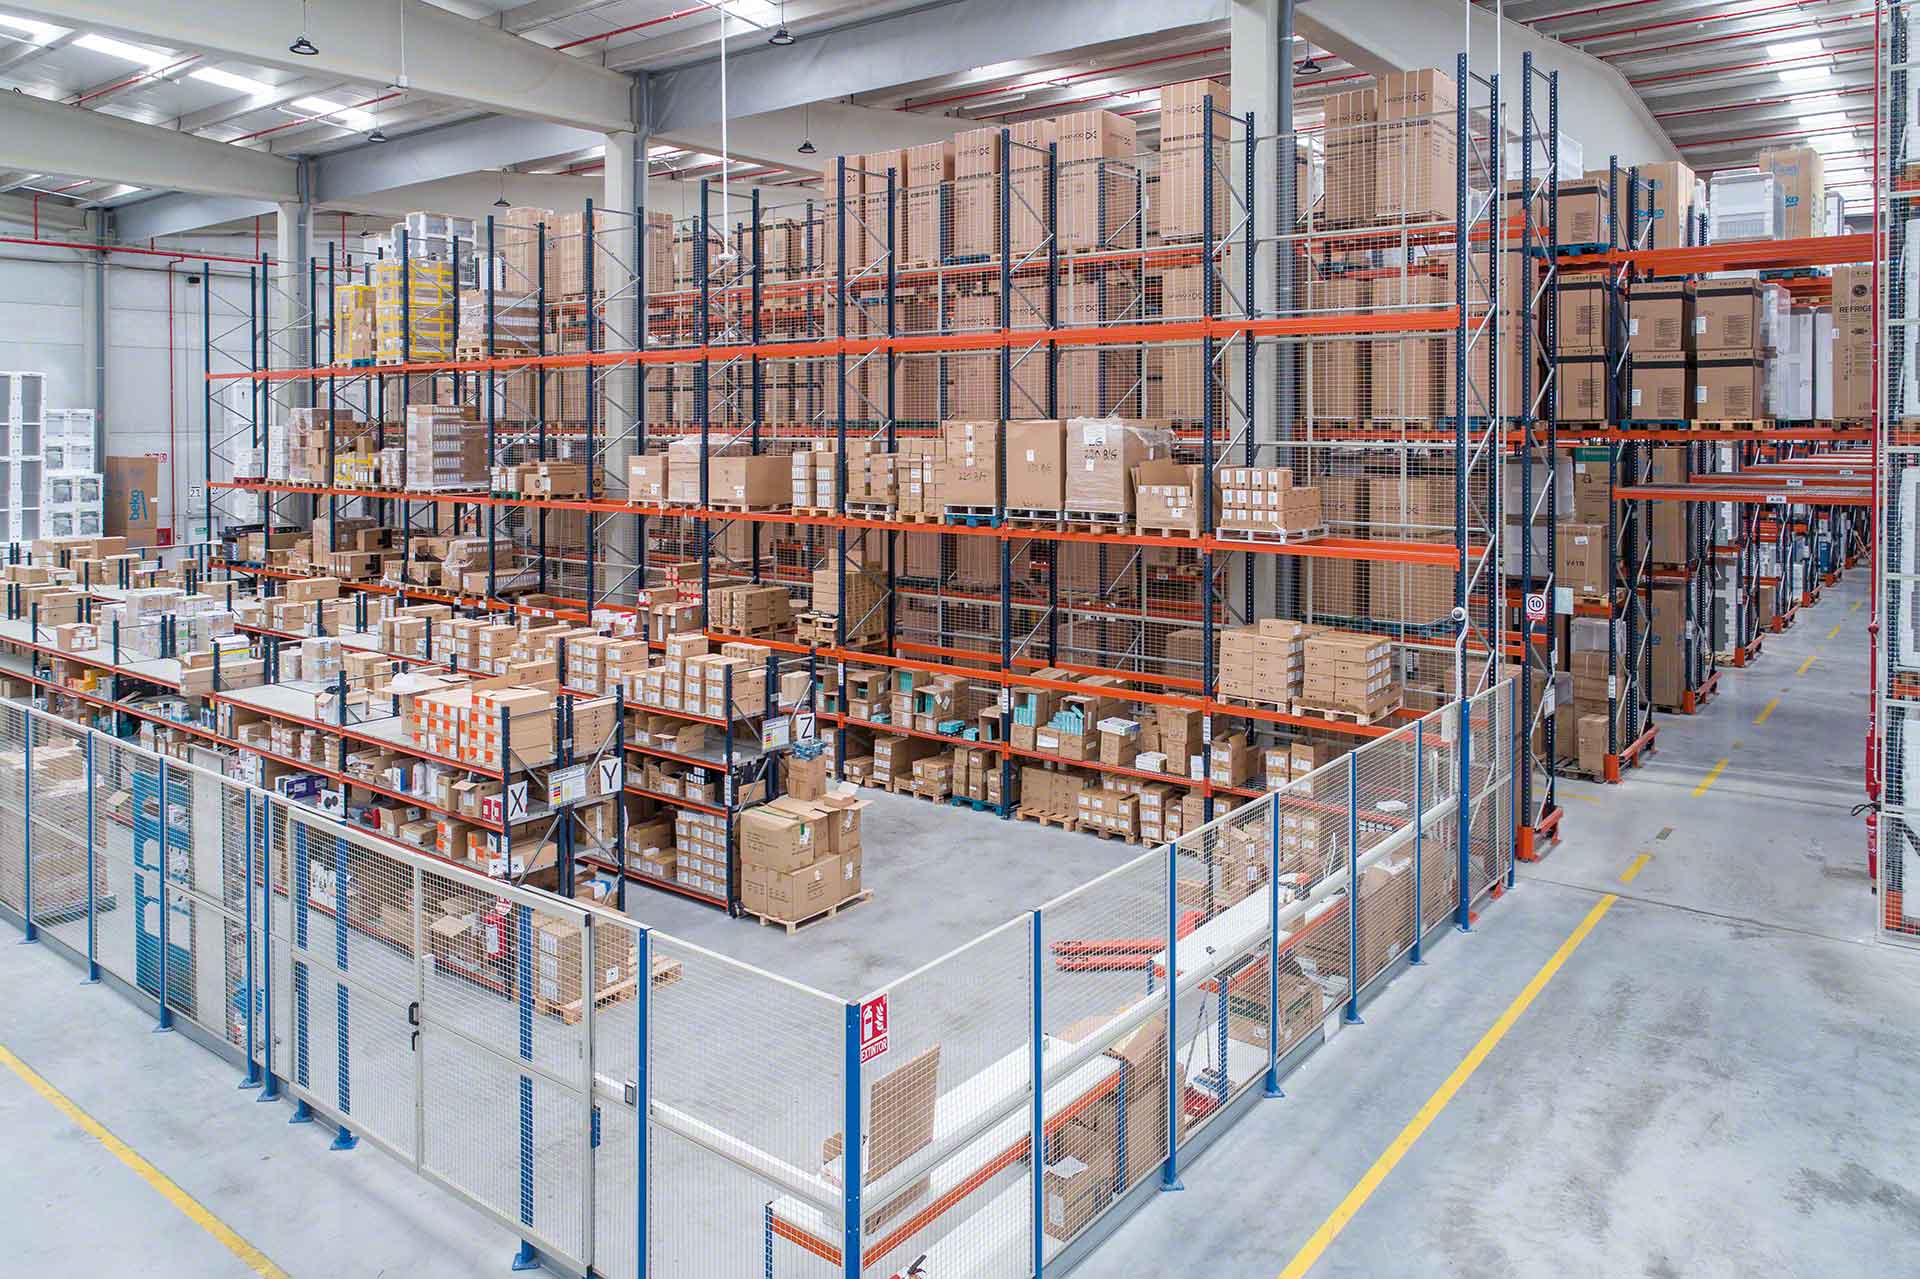 Os critérios de localização logística de stock são muito úteis para organizar mercadorias de forma eficaz